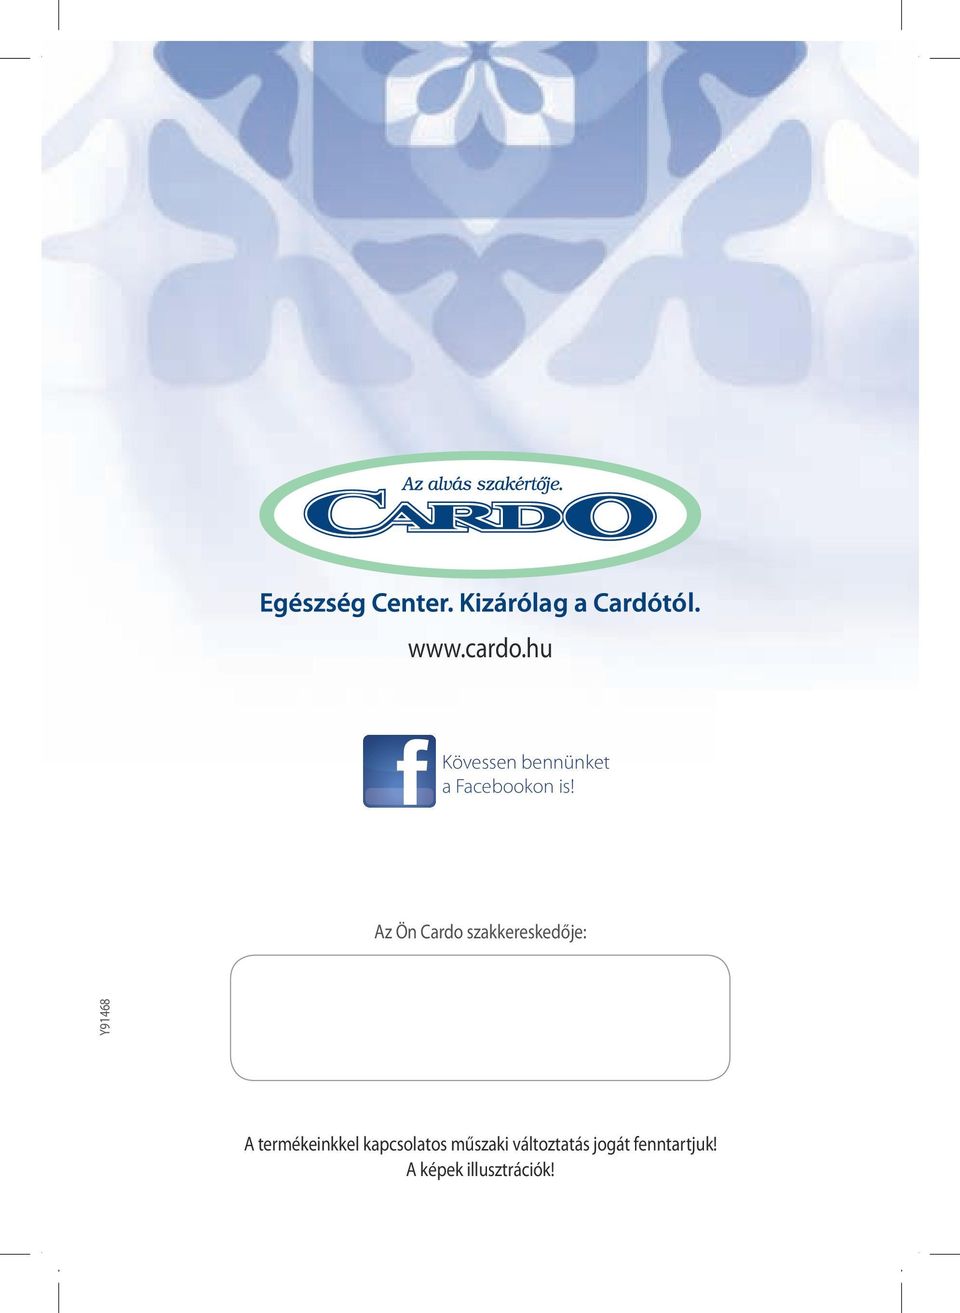 Az Ön Cardo szakkereskedője: Y91468 A